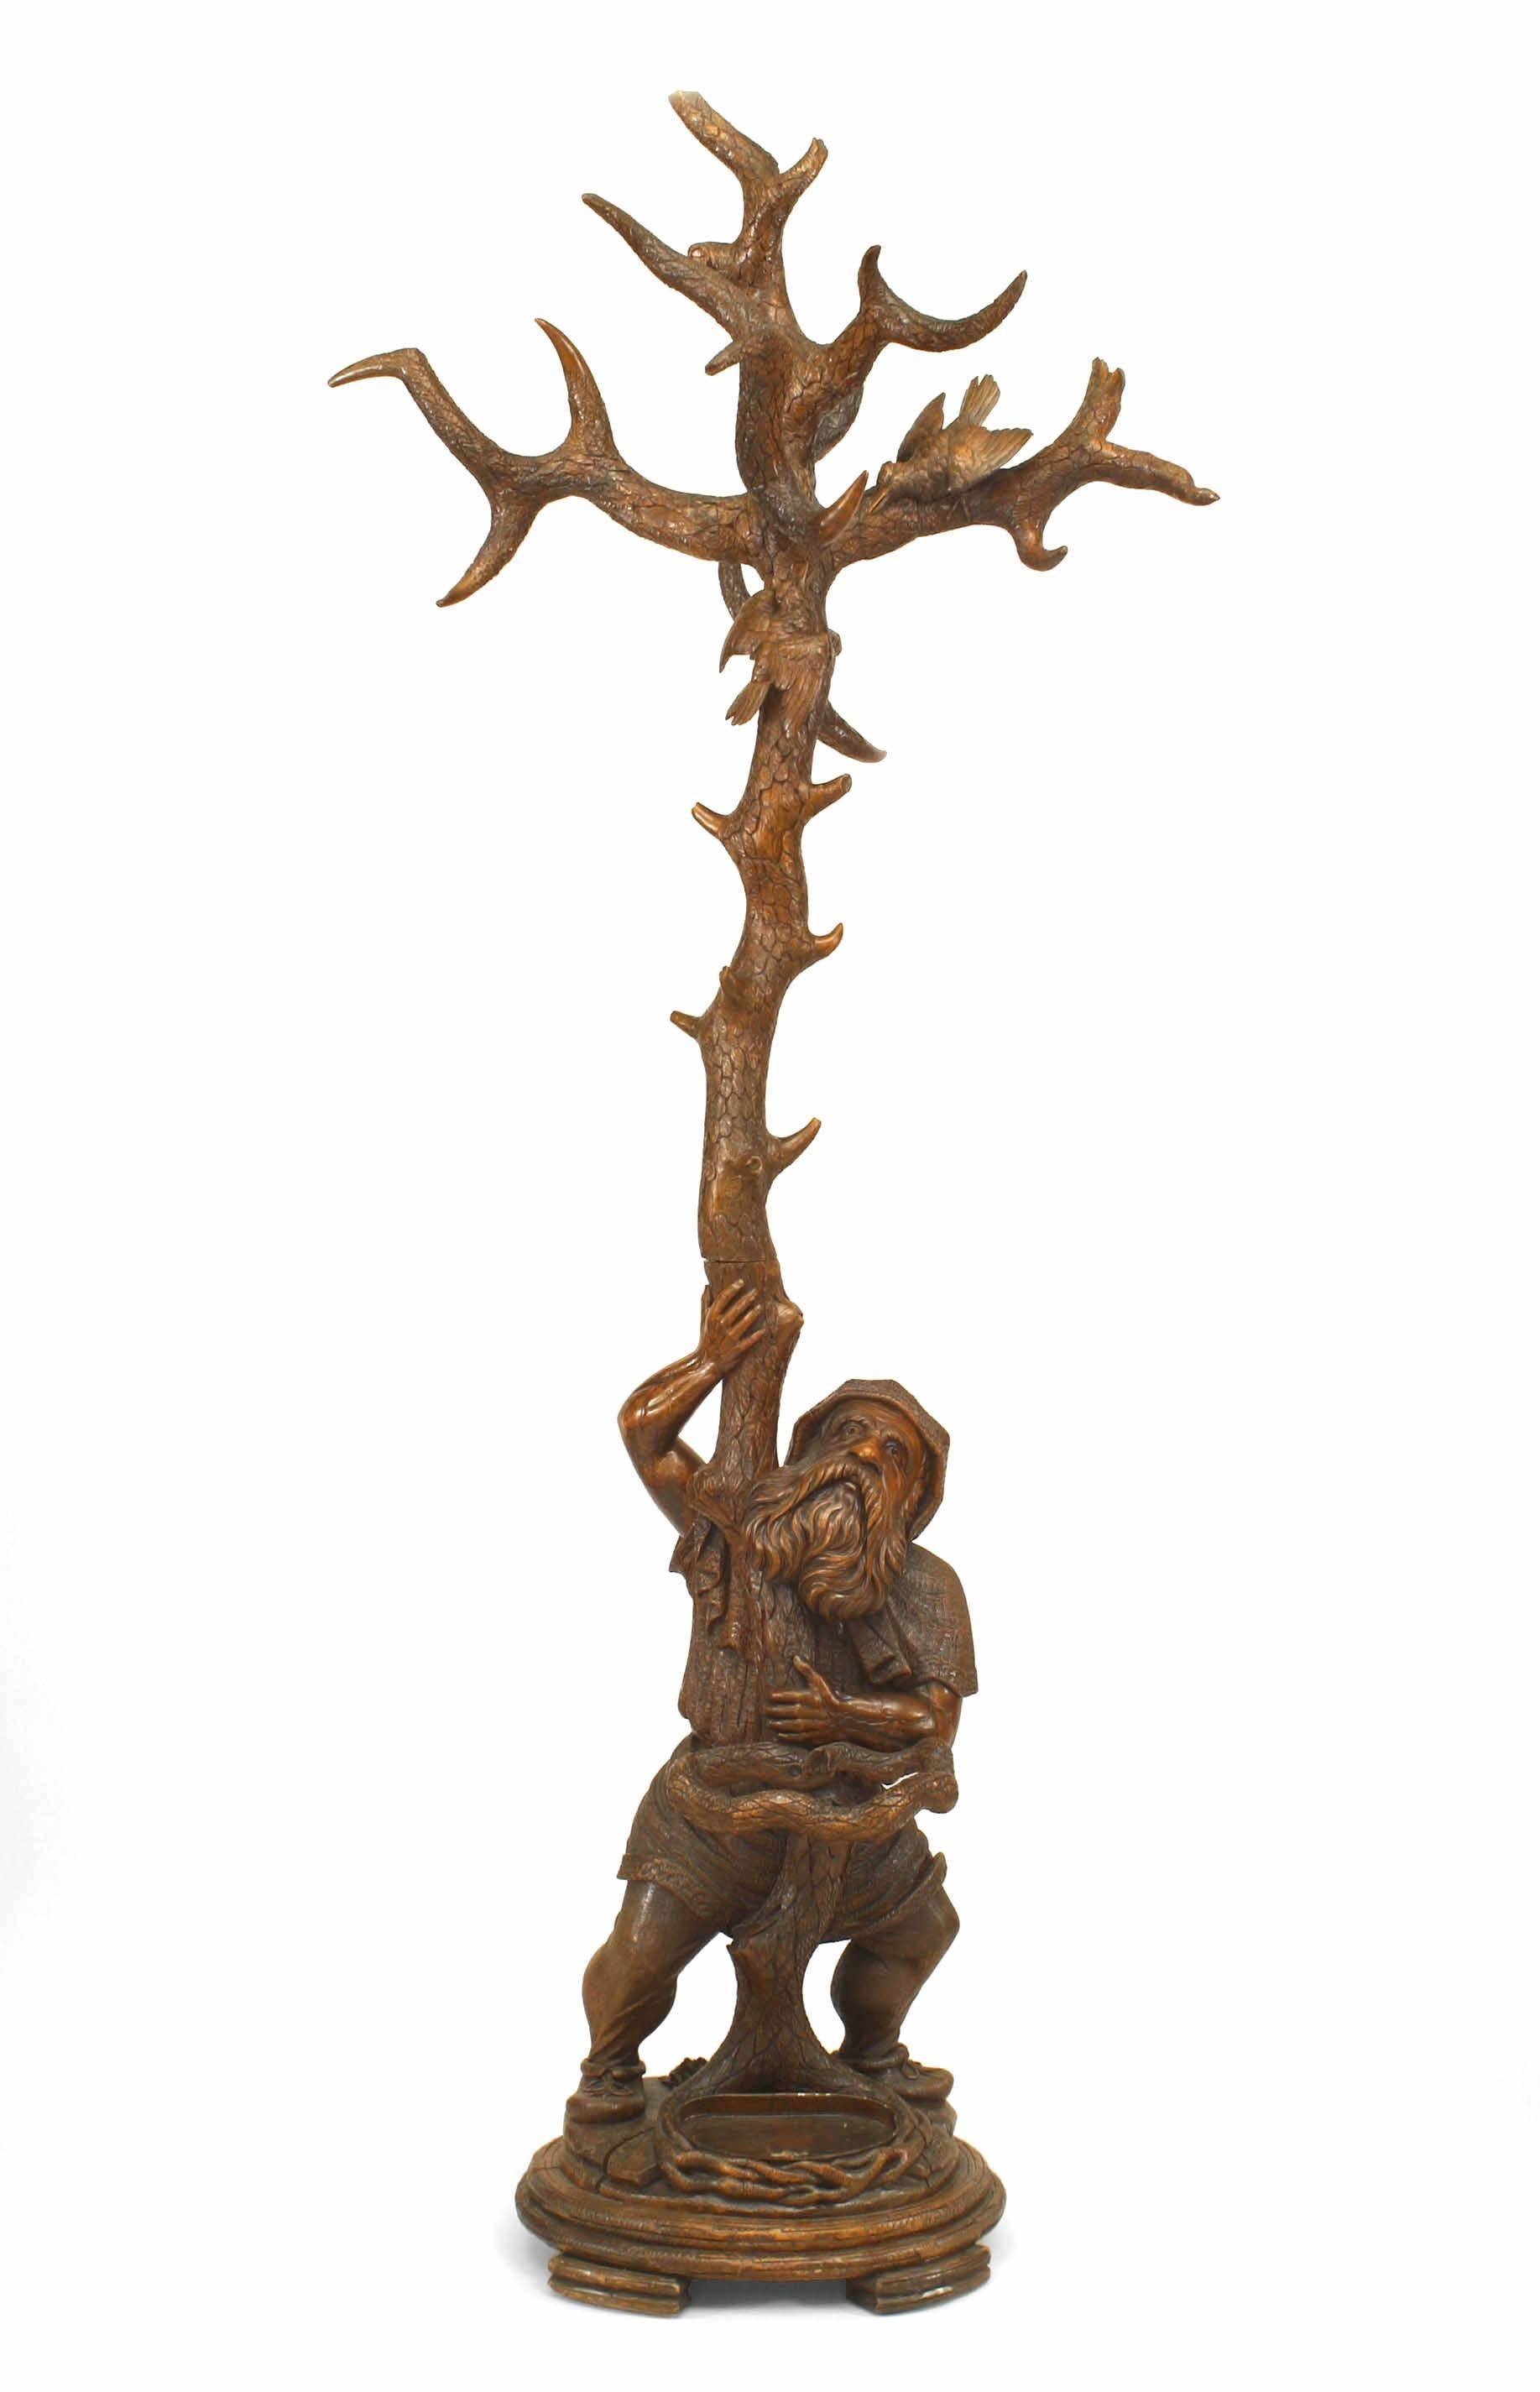 Porte-chapeau/parapluie rustique en noyer sculpté de style Forêt-Noire (19e siècle) avec figure de gnome tenant une forme d'arbre avec des oiseaux dans les branches supérieures.
